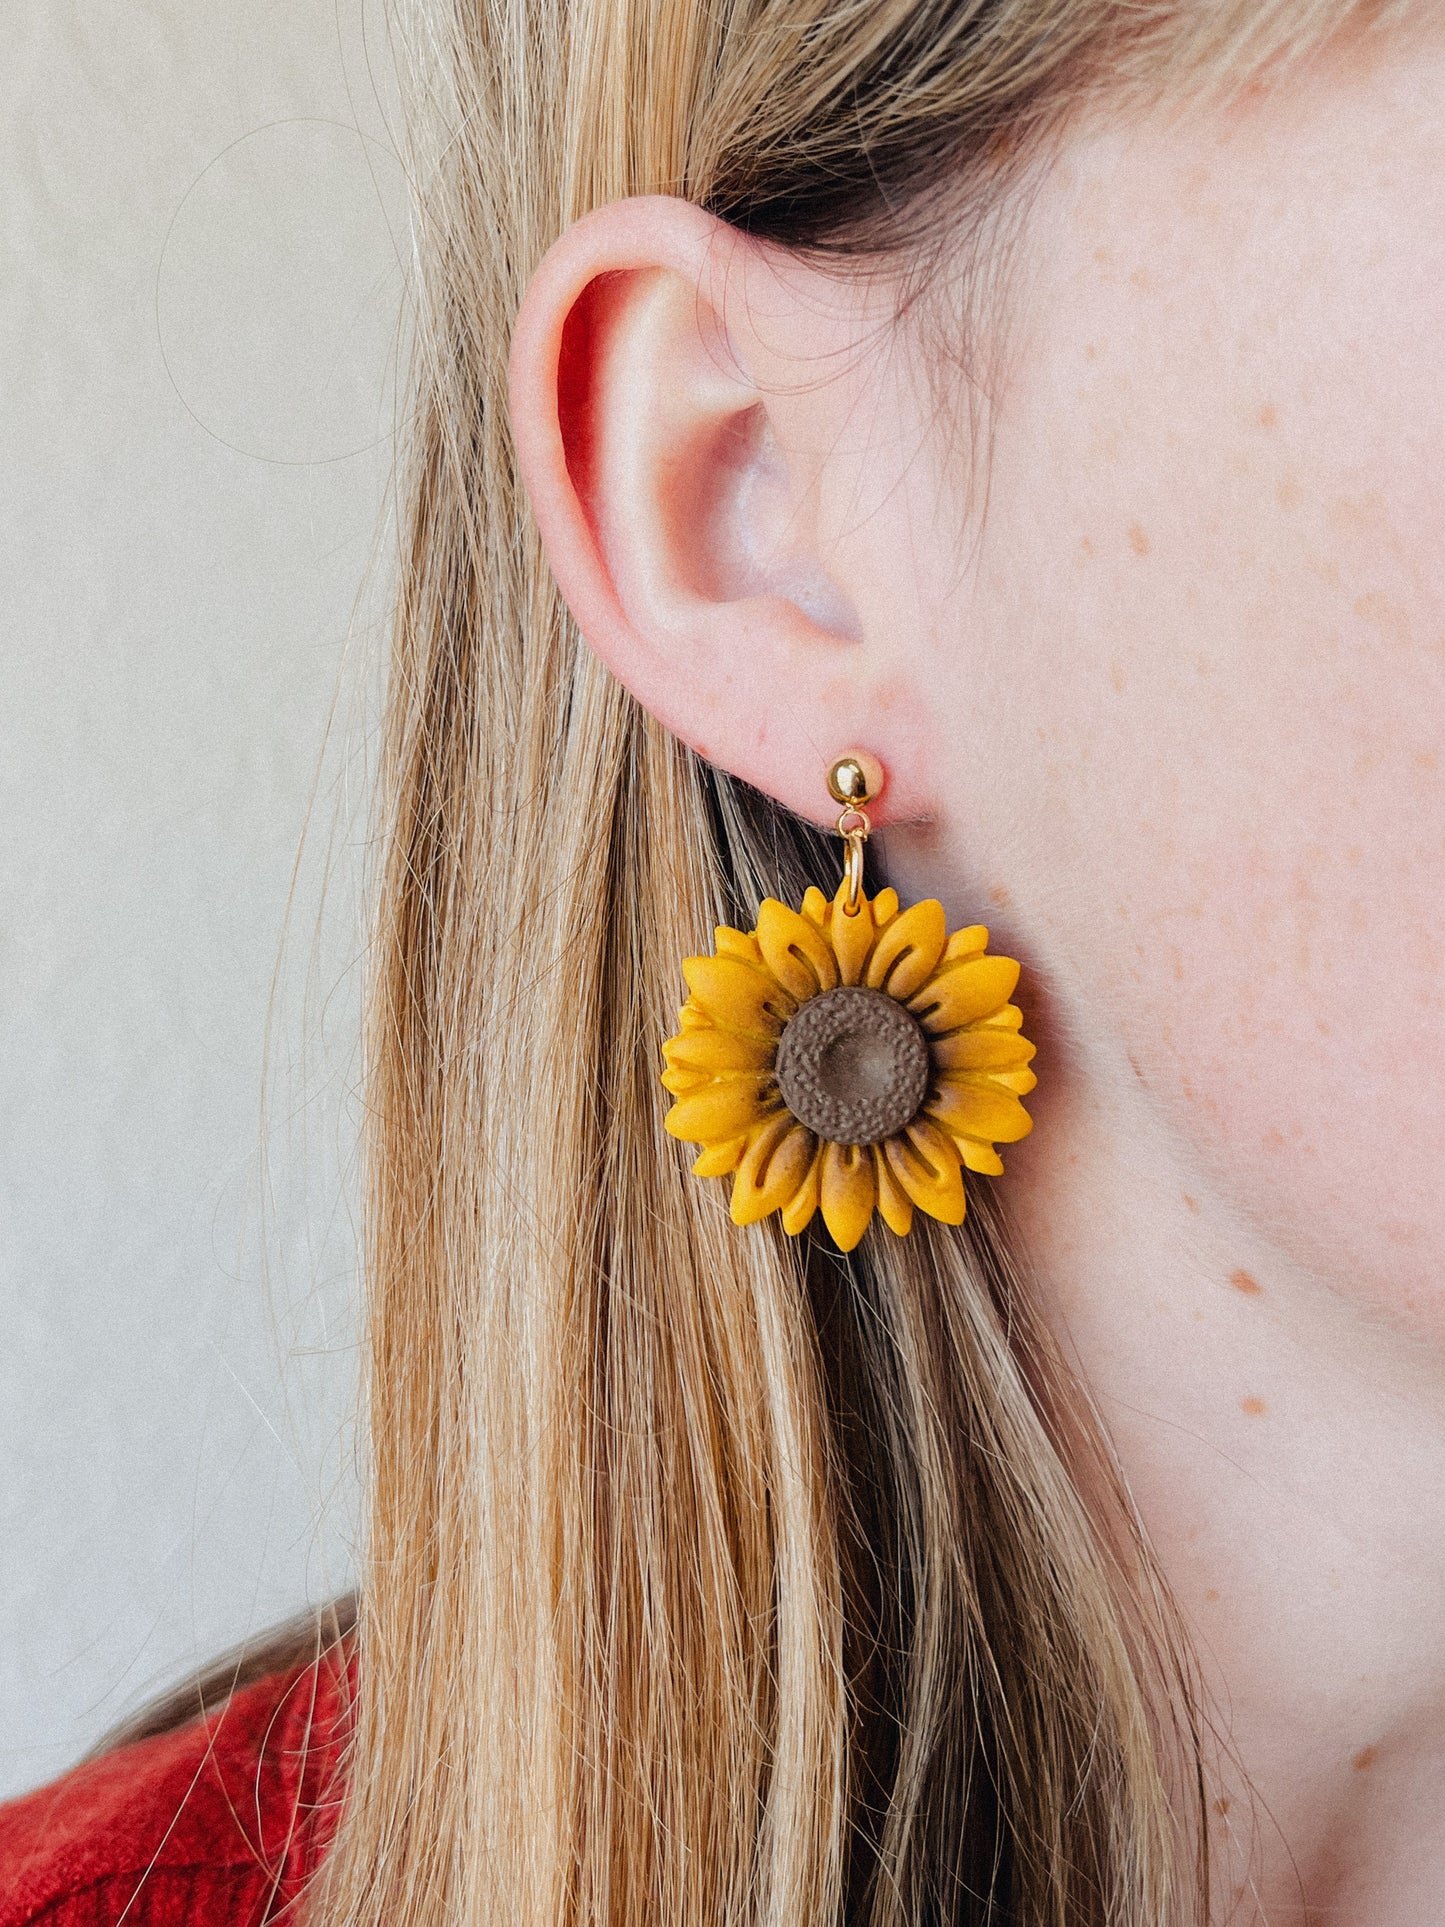 Natalie’s Sunflower Earrings